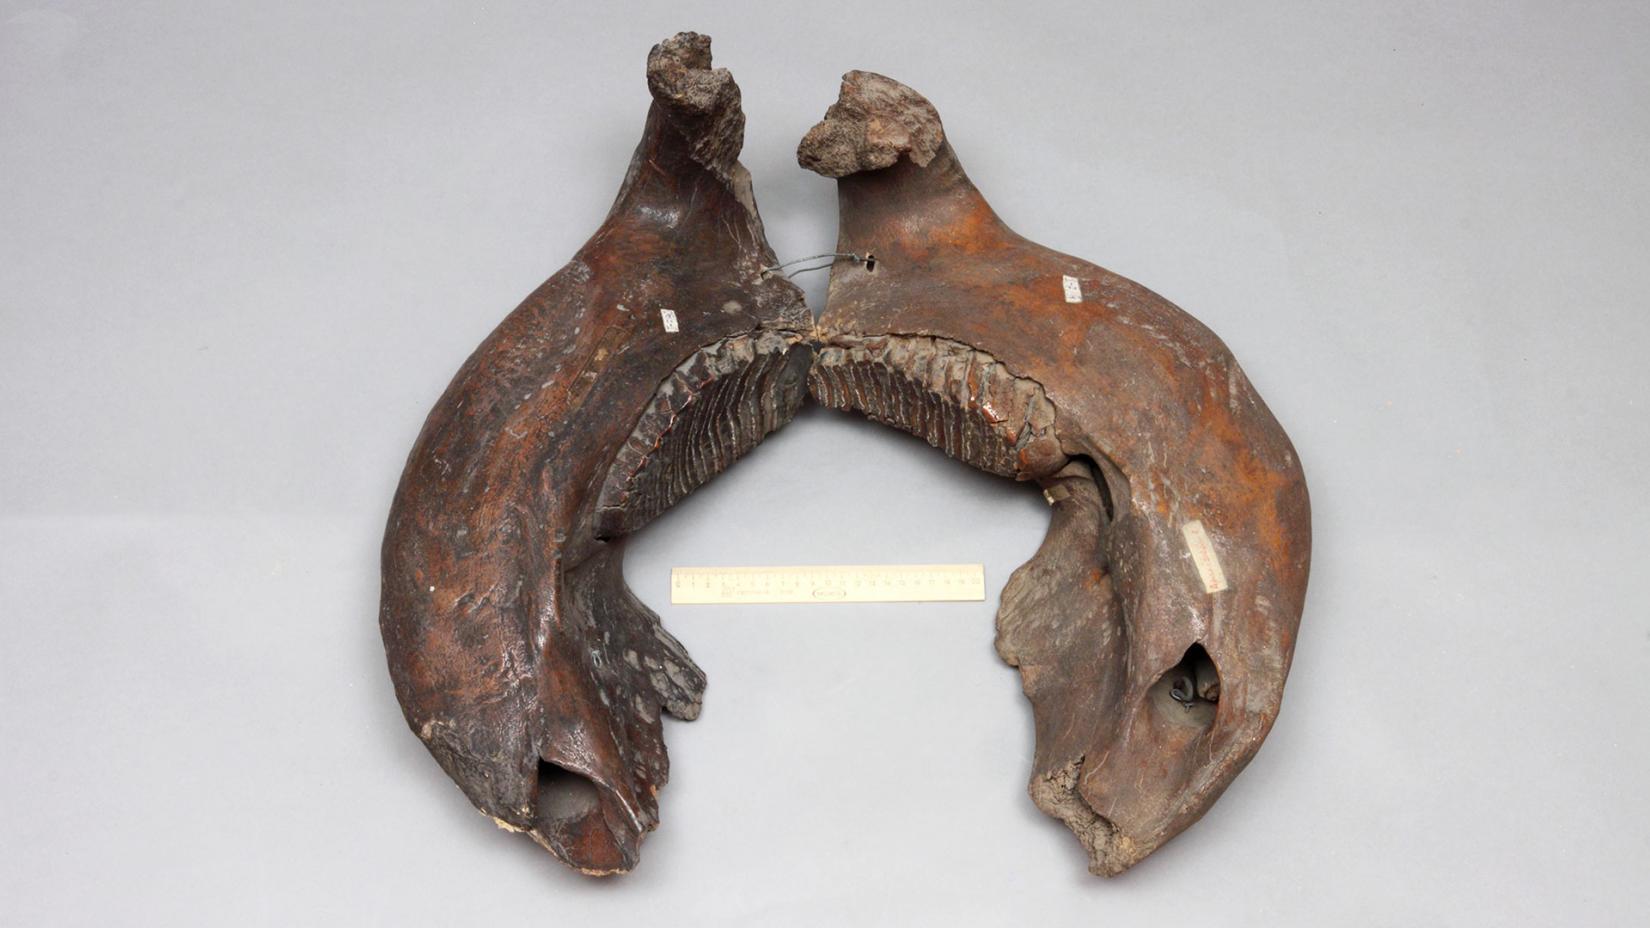 Шерстистый мамонт (Mammuthus primigenius) нижняя челюсть с зубами